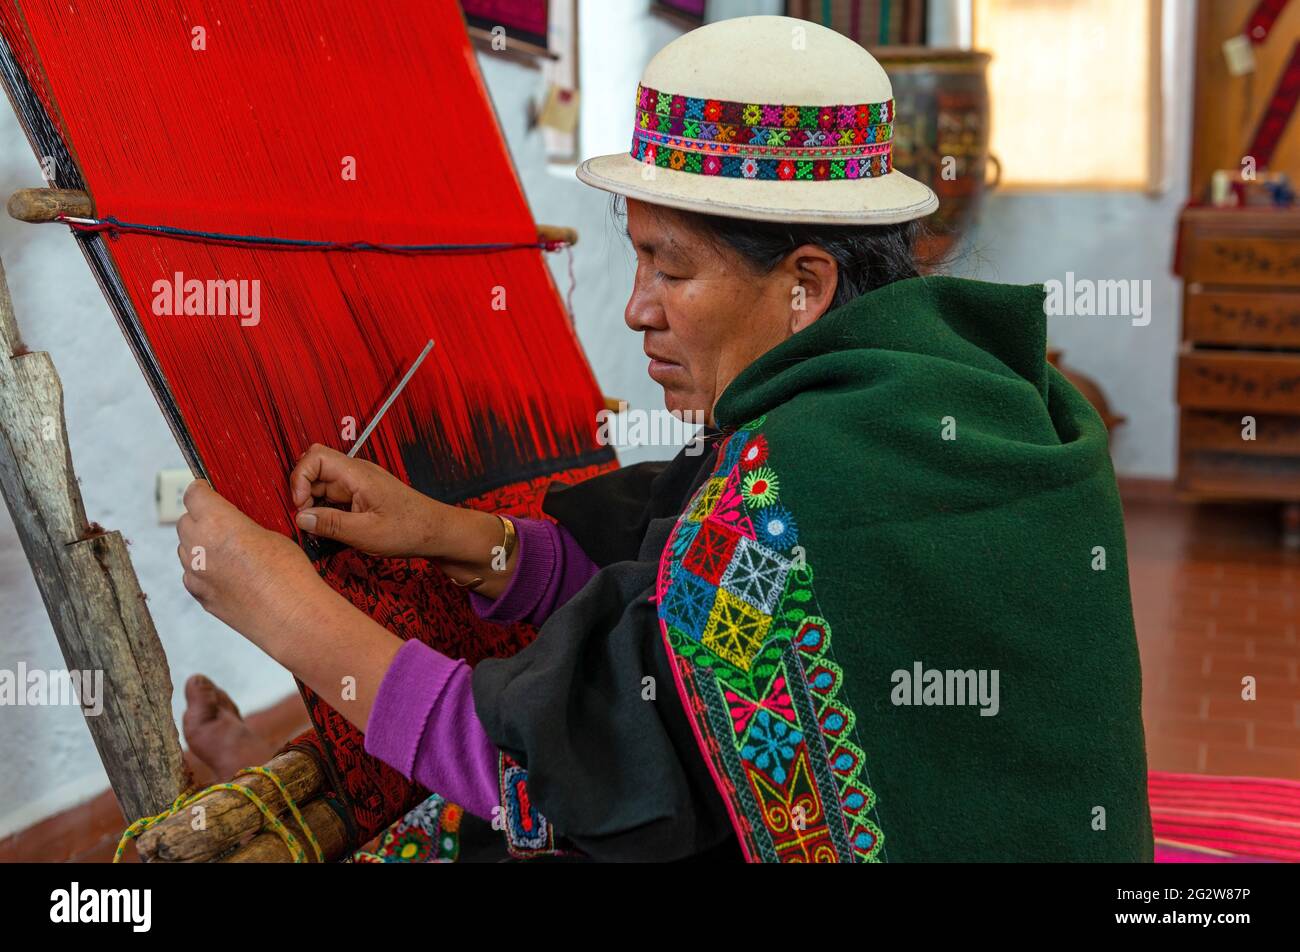 Bolivianische ältere indigene Frau in traditioneller Kleidung, zeigt traditionelle Jalq'a Textilweberei, Sucre, Bolivien. Stockfoto